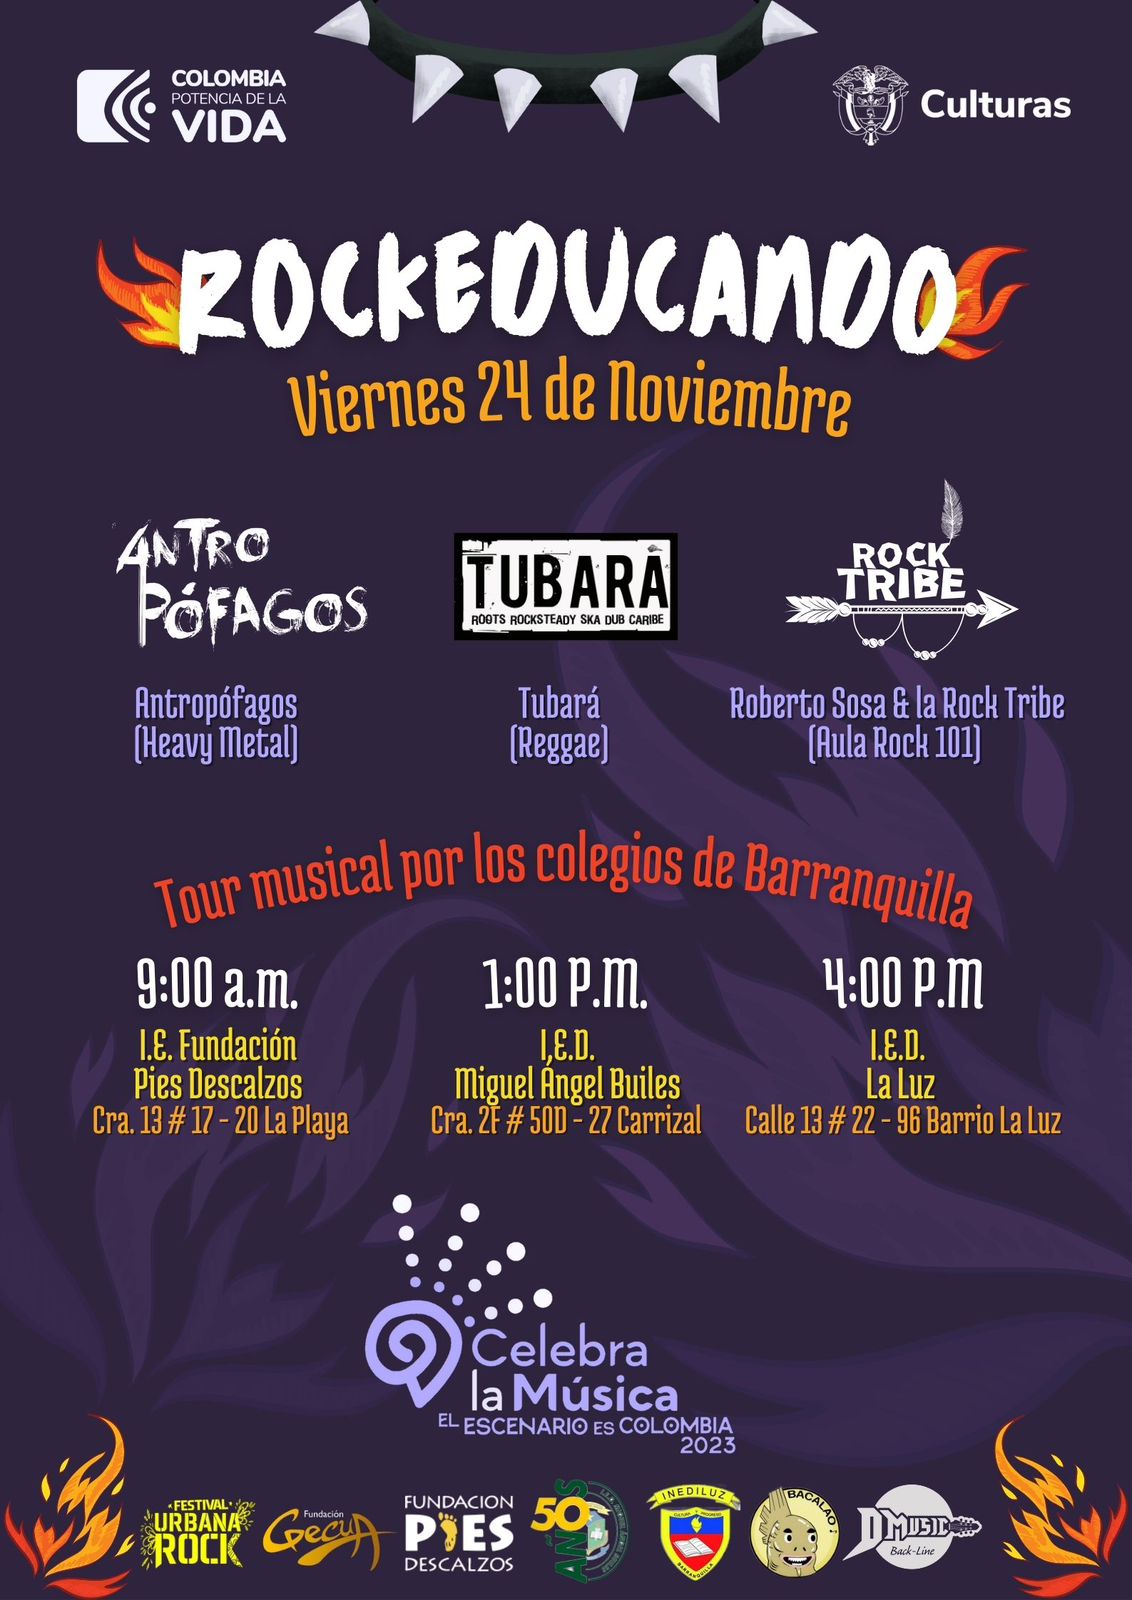 La ‘Rockonstrucción’ se toma las instituciones educativas de Barranquilla con grandes bandas de la escena local